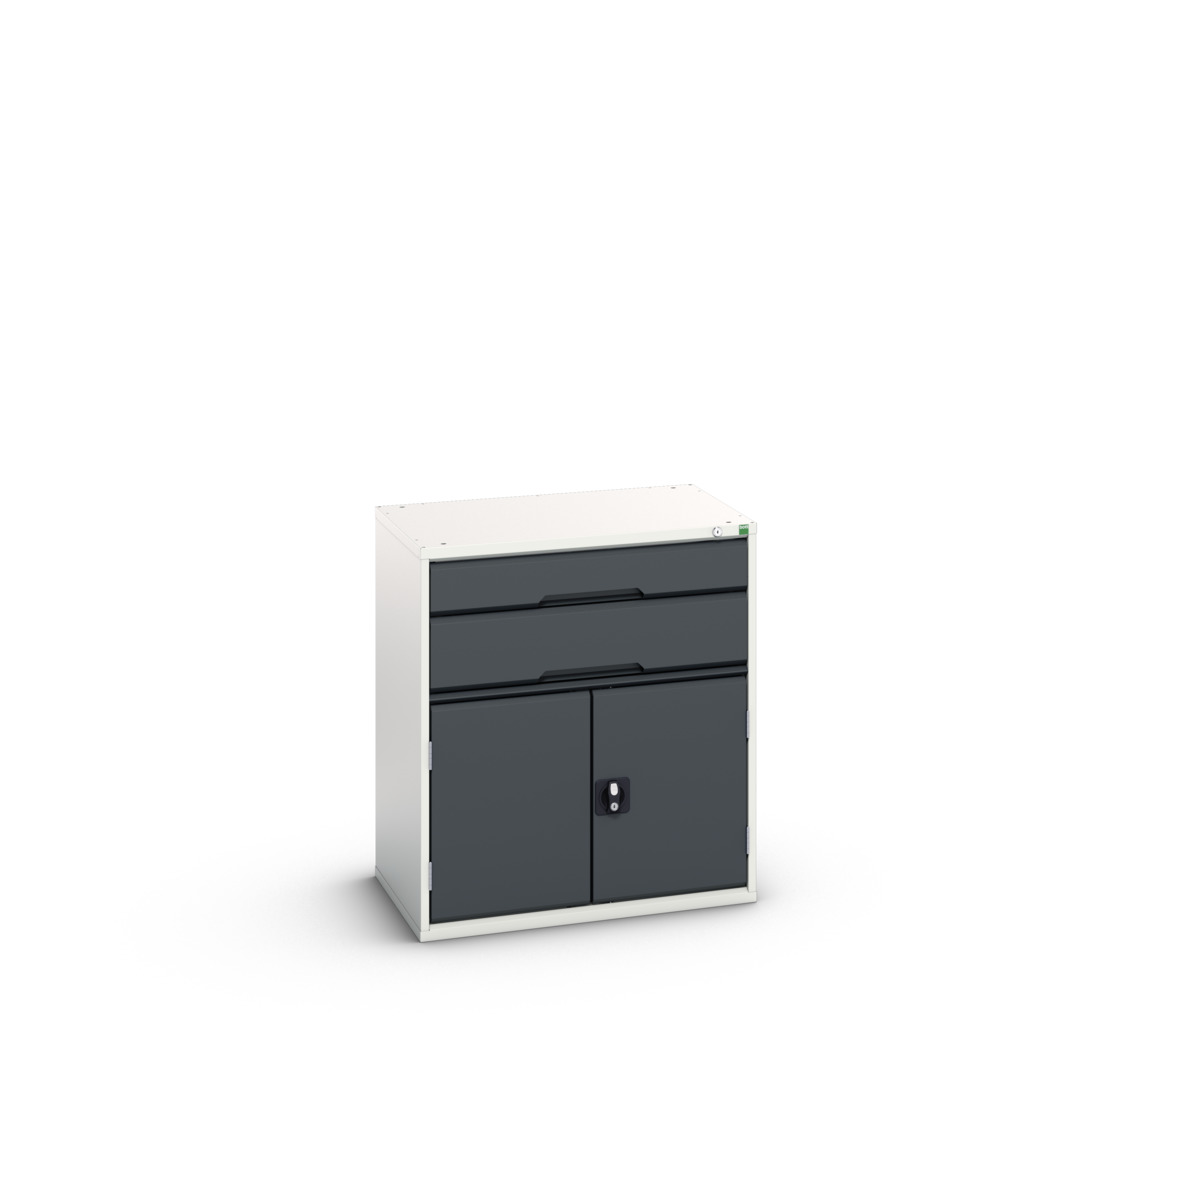 16925137.19 - verso drawer-door cabinet